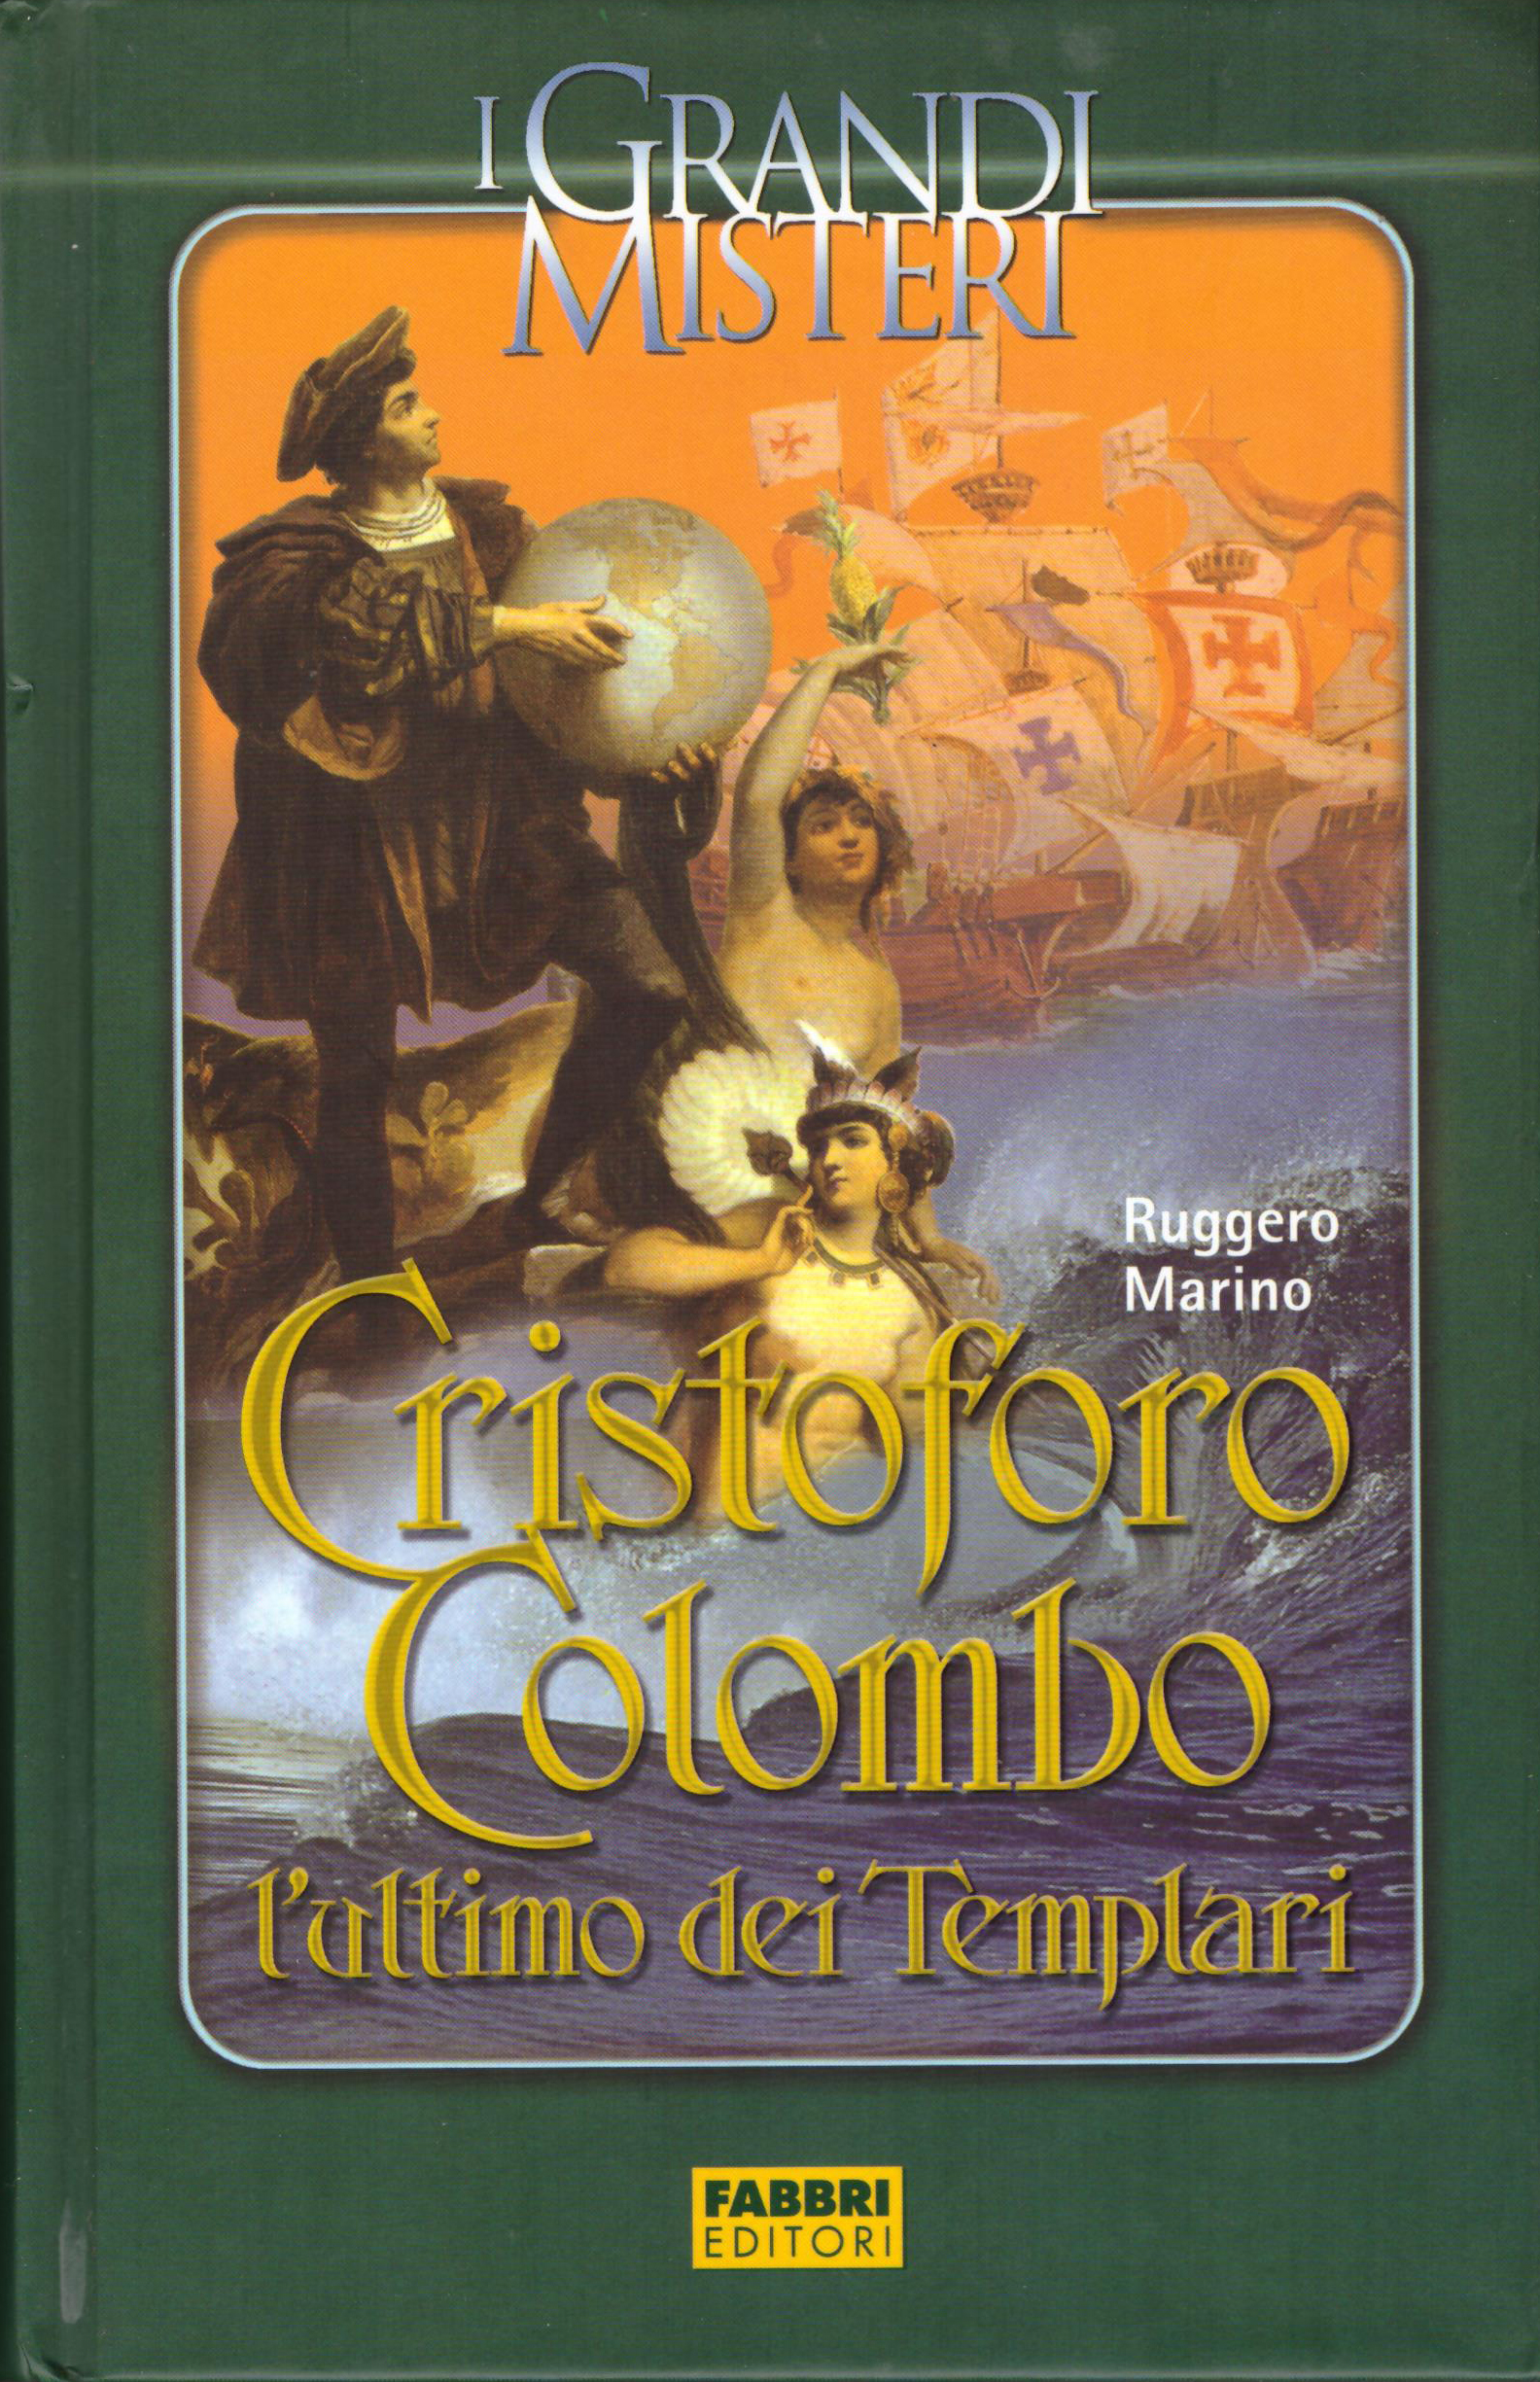 Copertina del libro Cristoforo Colombo, l'ultimo dei Templari del 2006 di Ruggero Marino